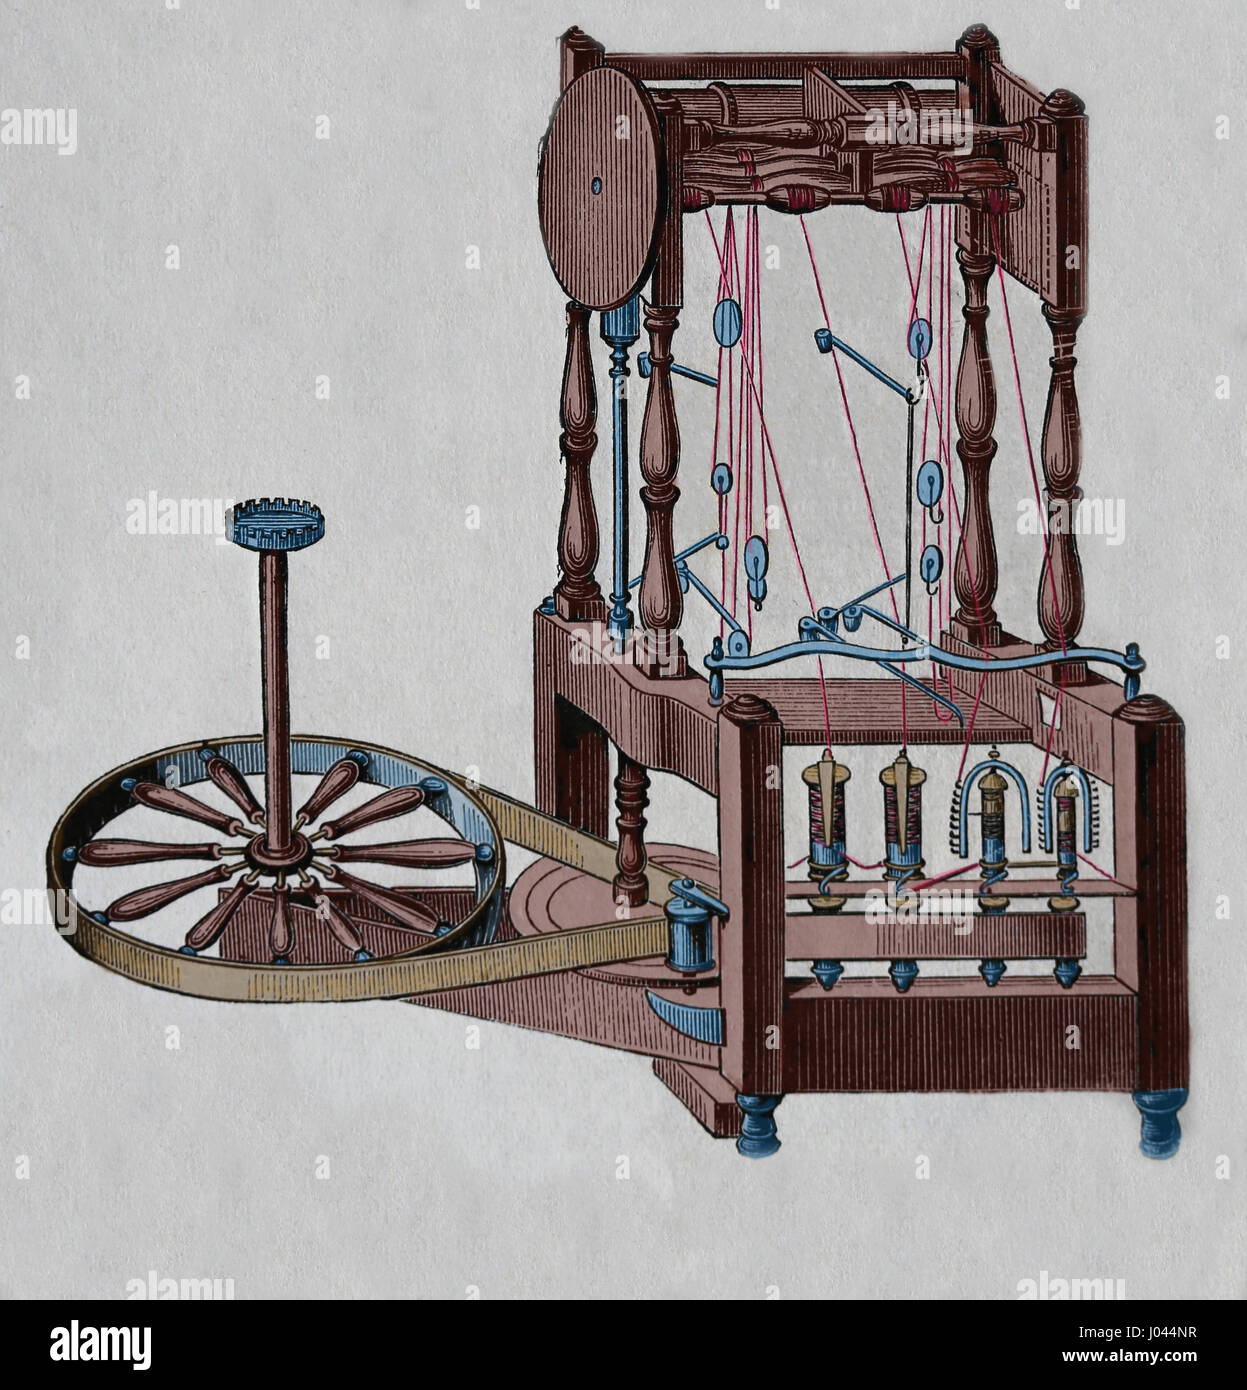 Arkwrights Spinnen-Frame. Wasserrahmen. Entworfen von Richard Arkwright. Gravur, Nuestro Siglo, 1883. Spanische Ausgabe. Stockfoto